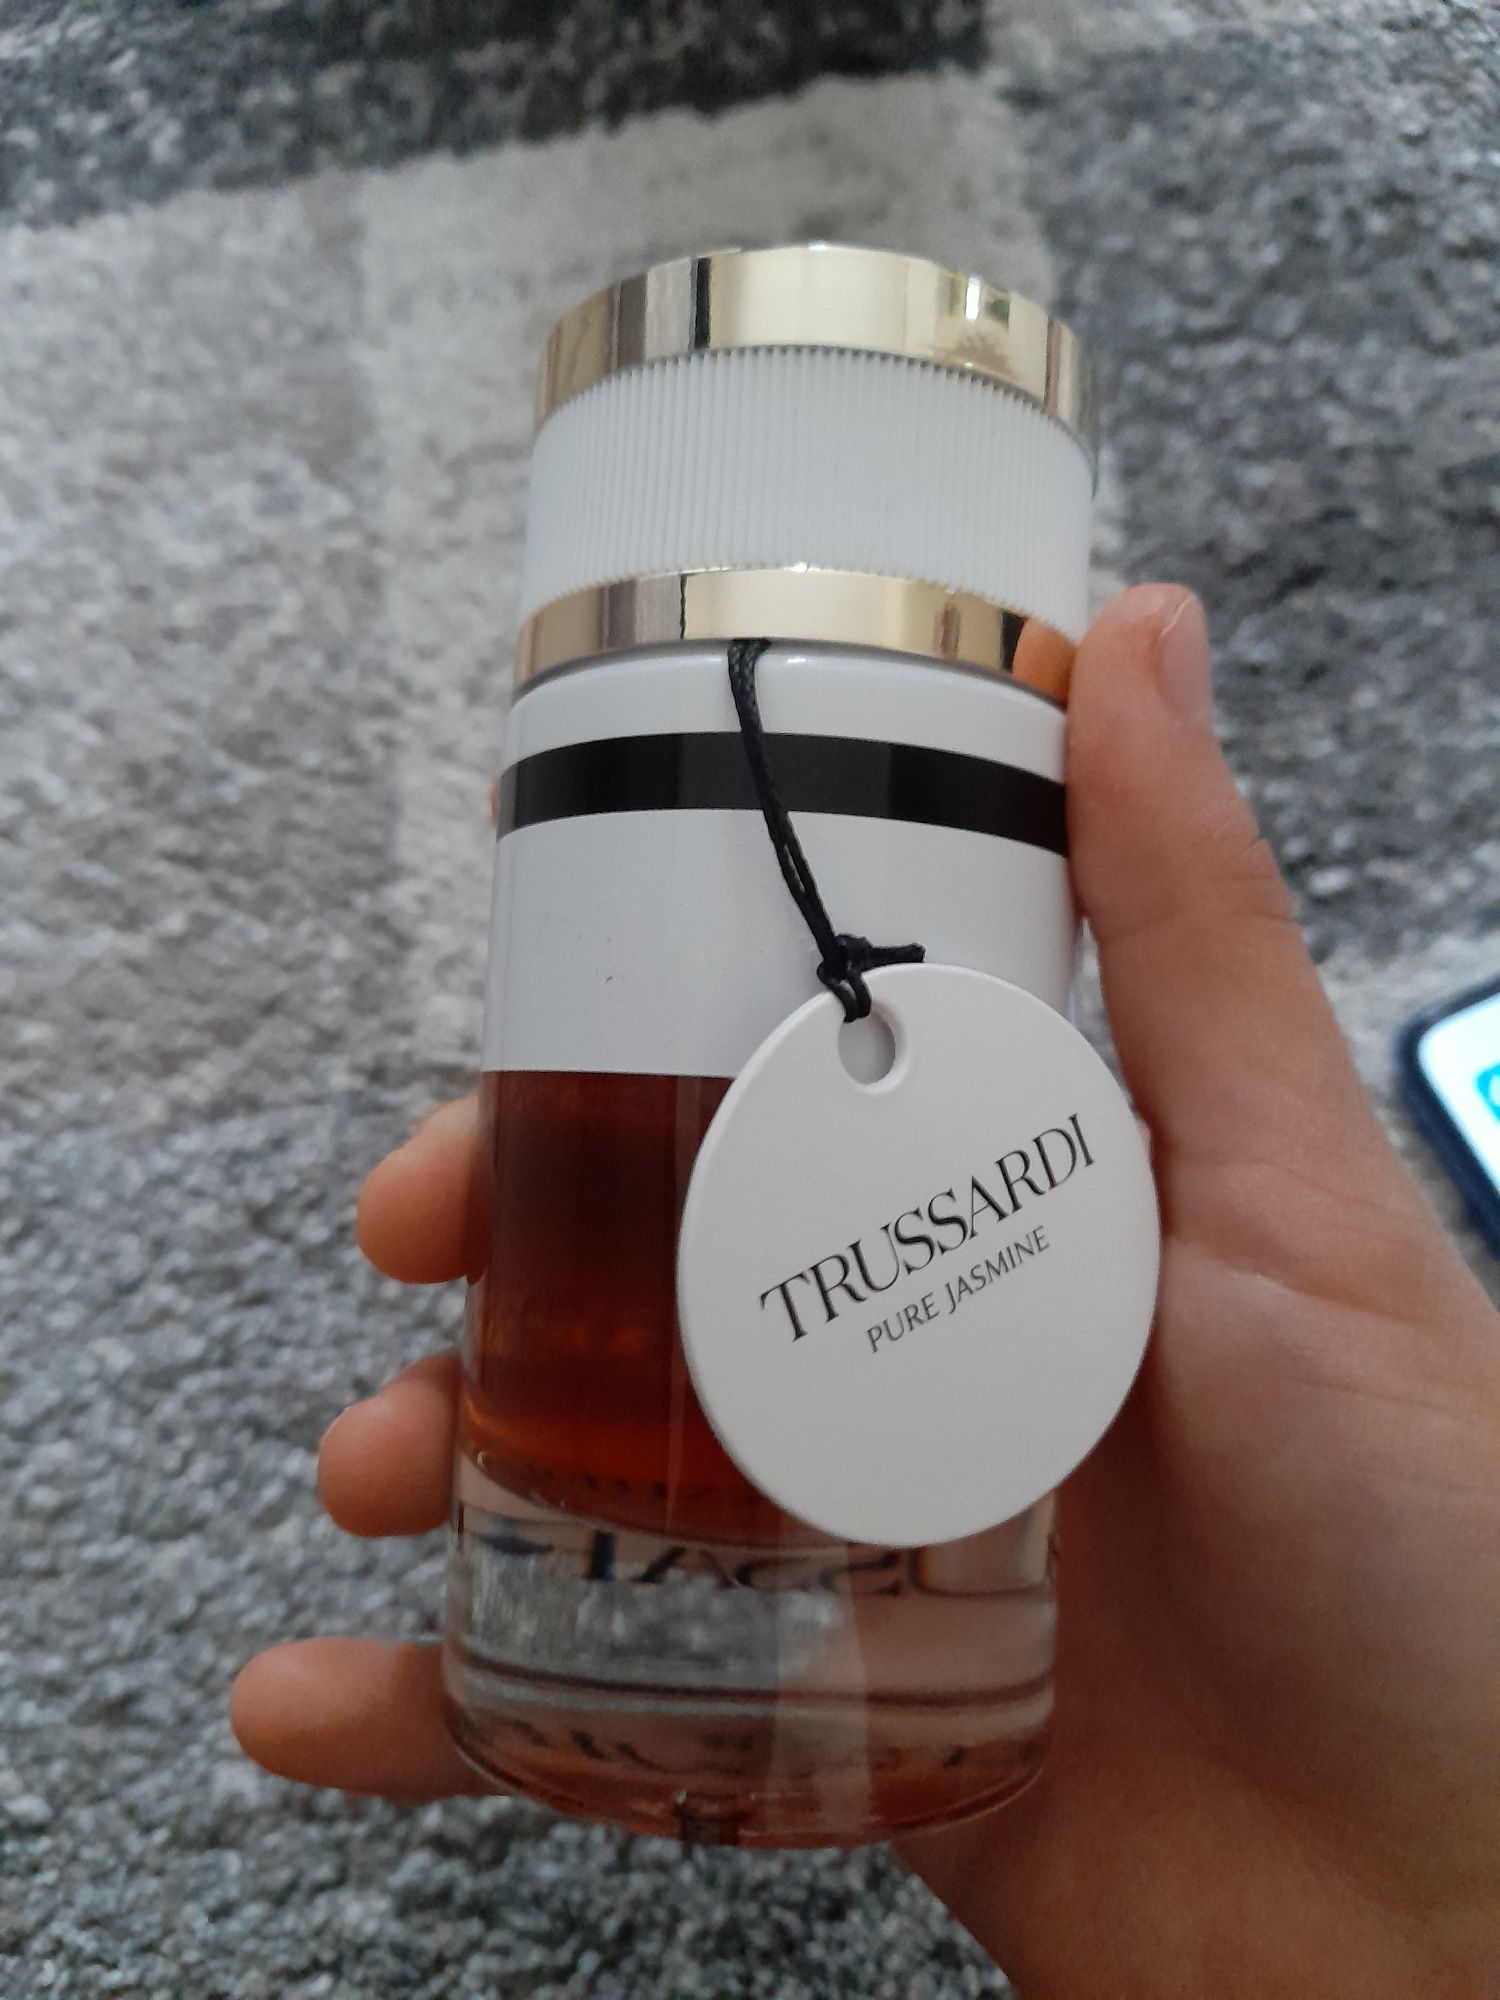 Vand apa de parfum Trussardi -Pure Jasmine 90 ml